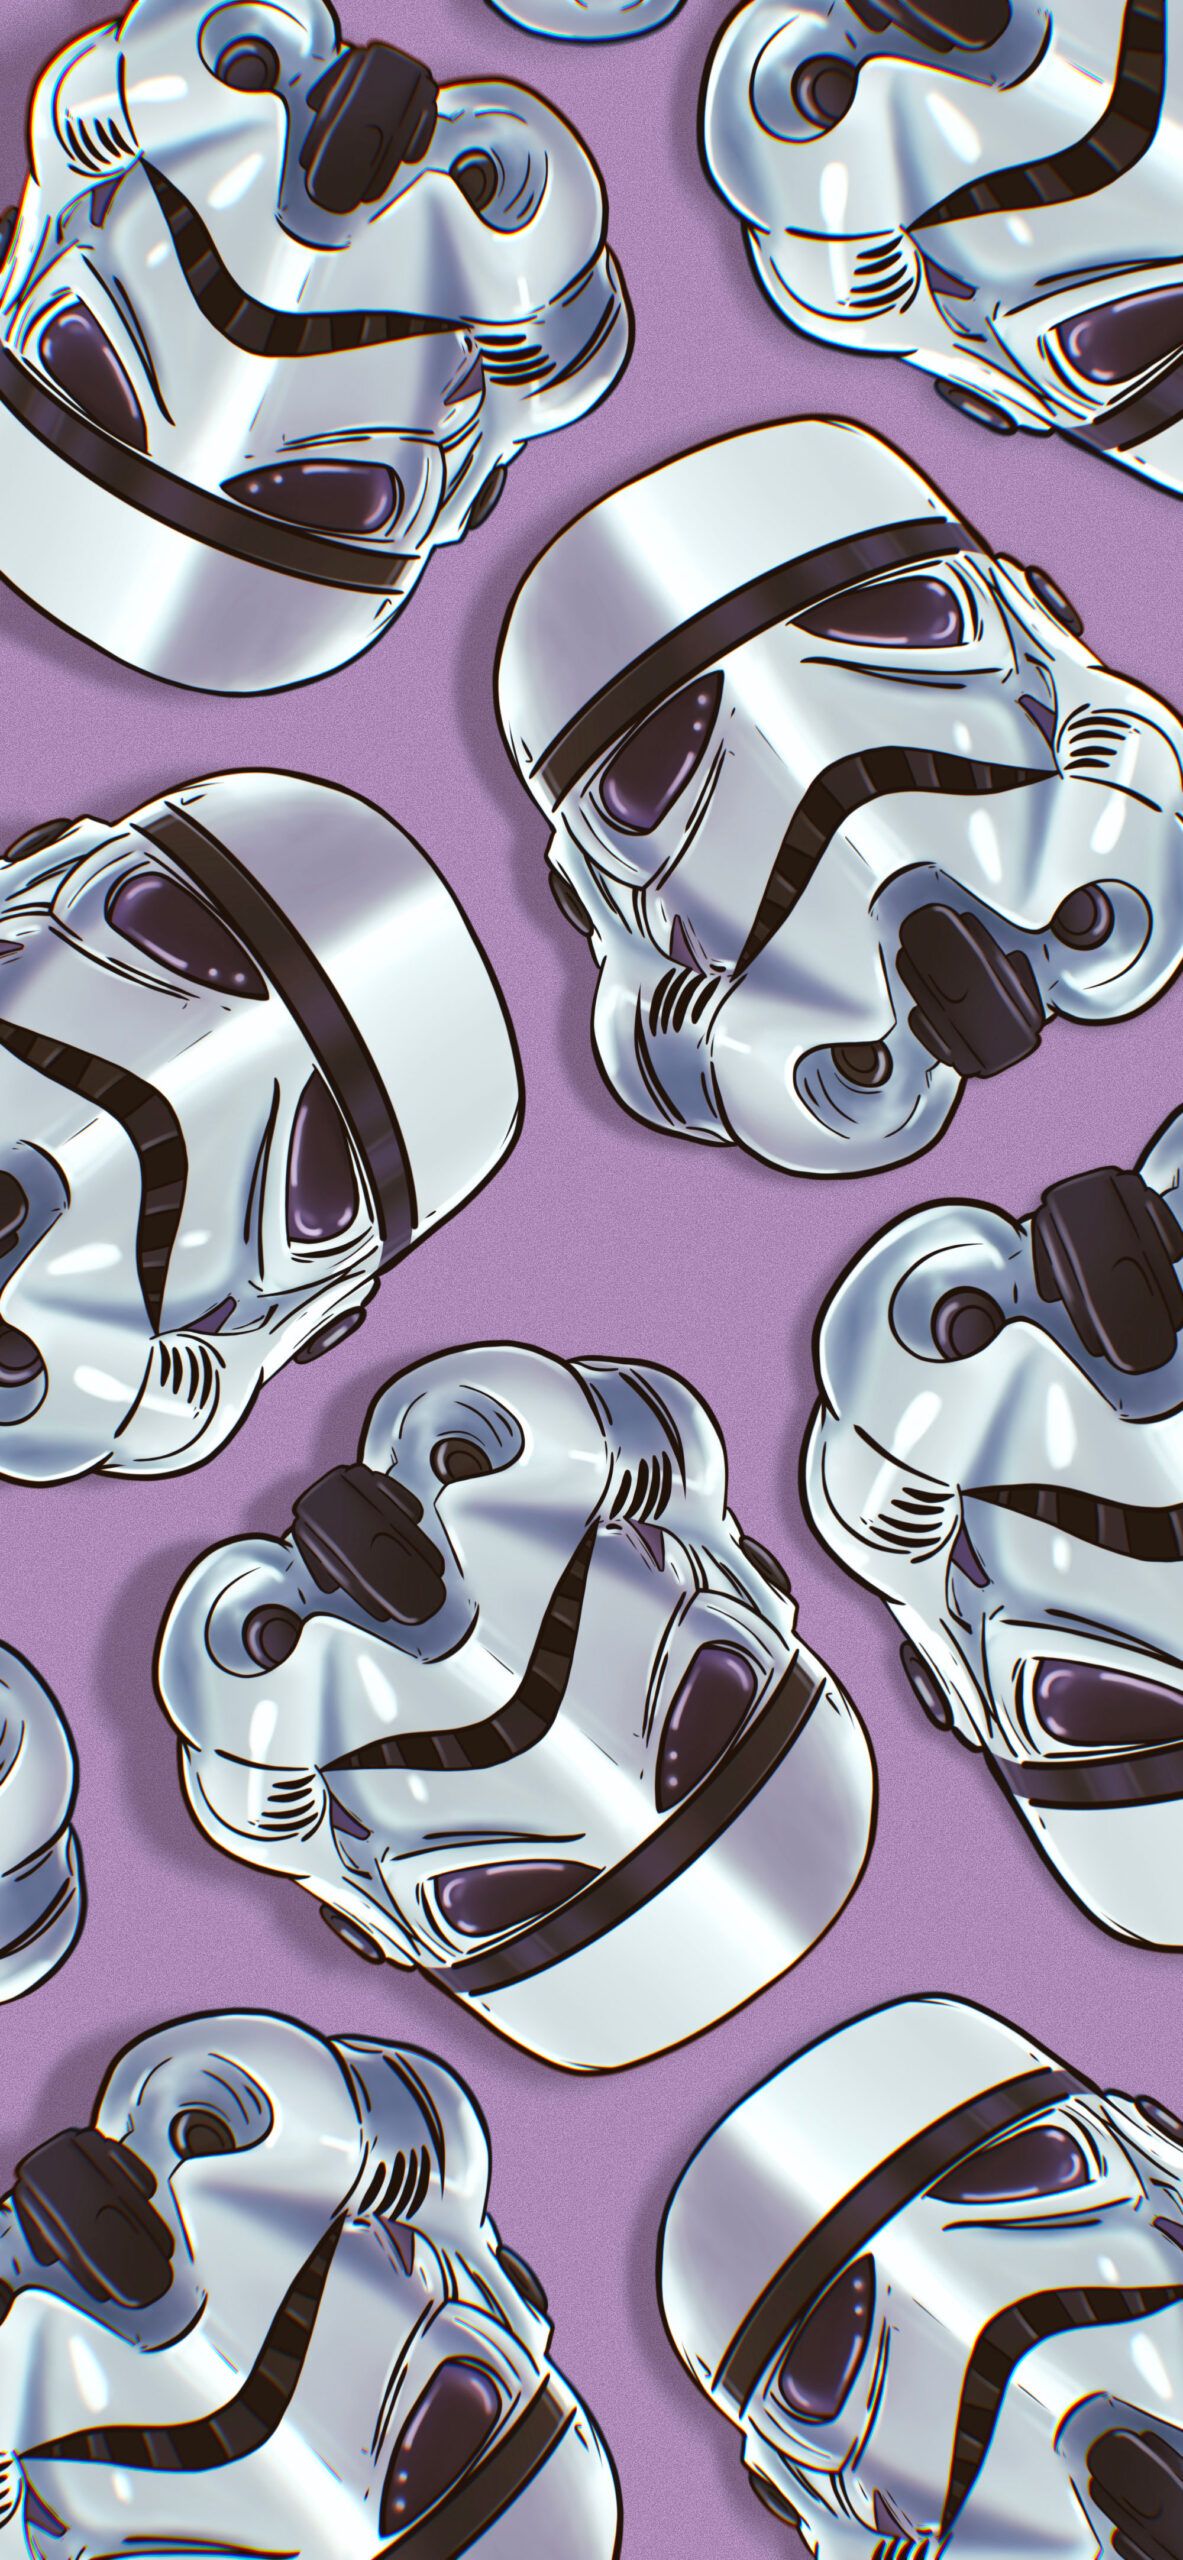 A pattern of stormtrooper helmets on purple - Star Wars